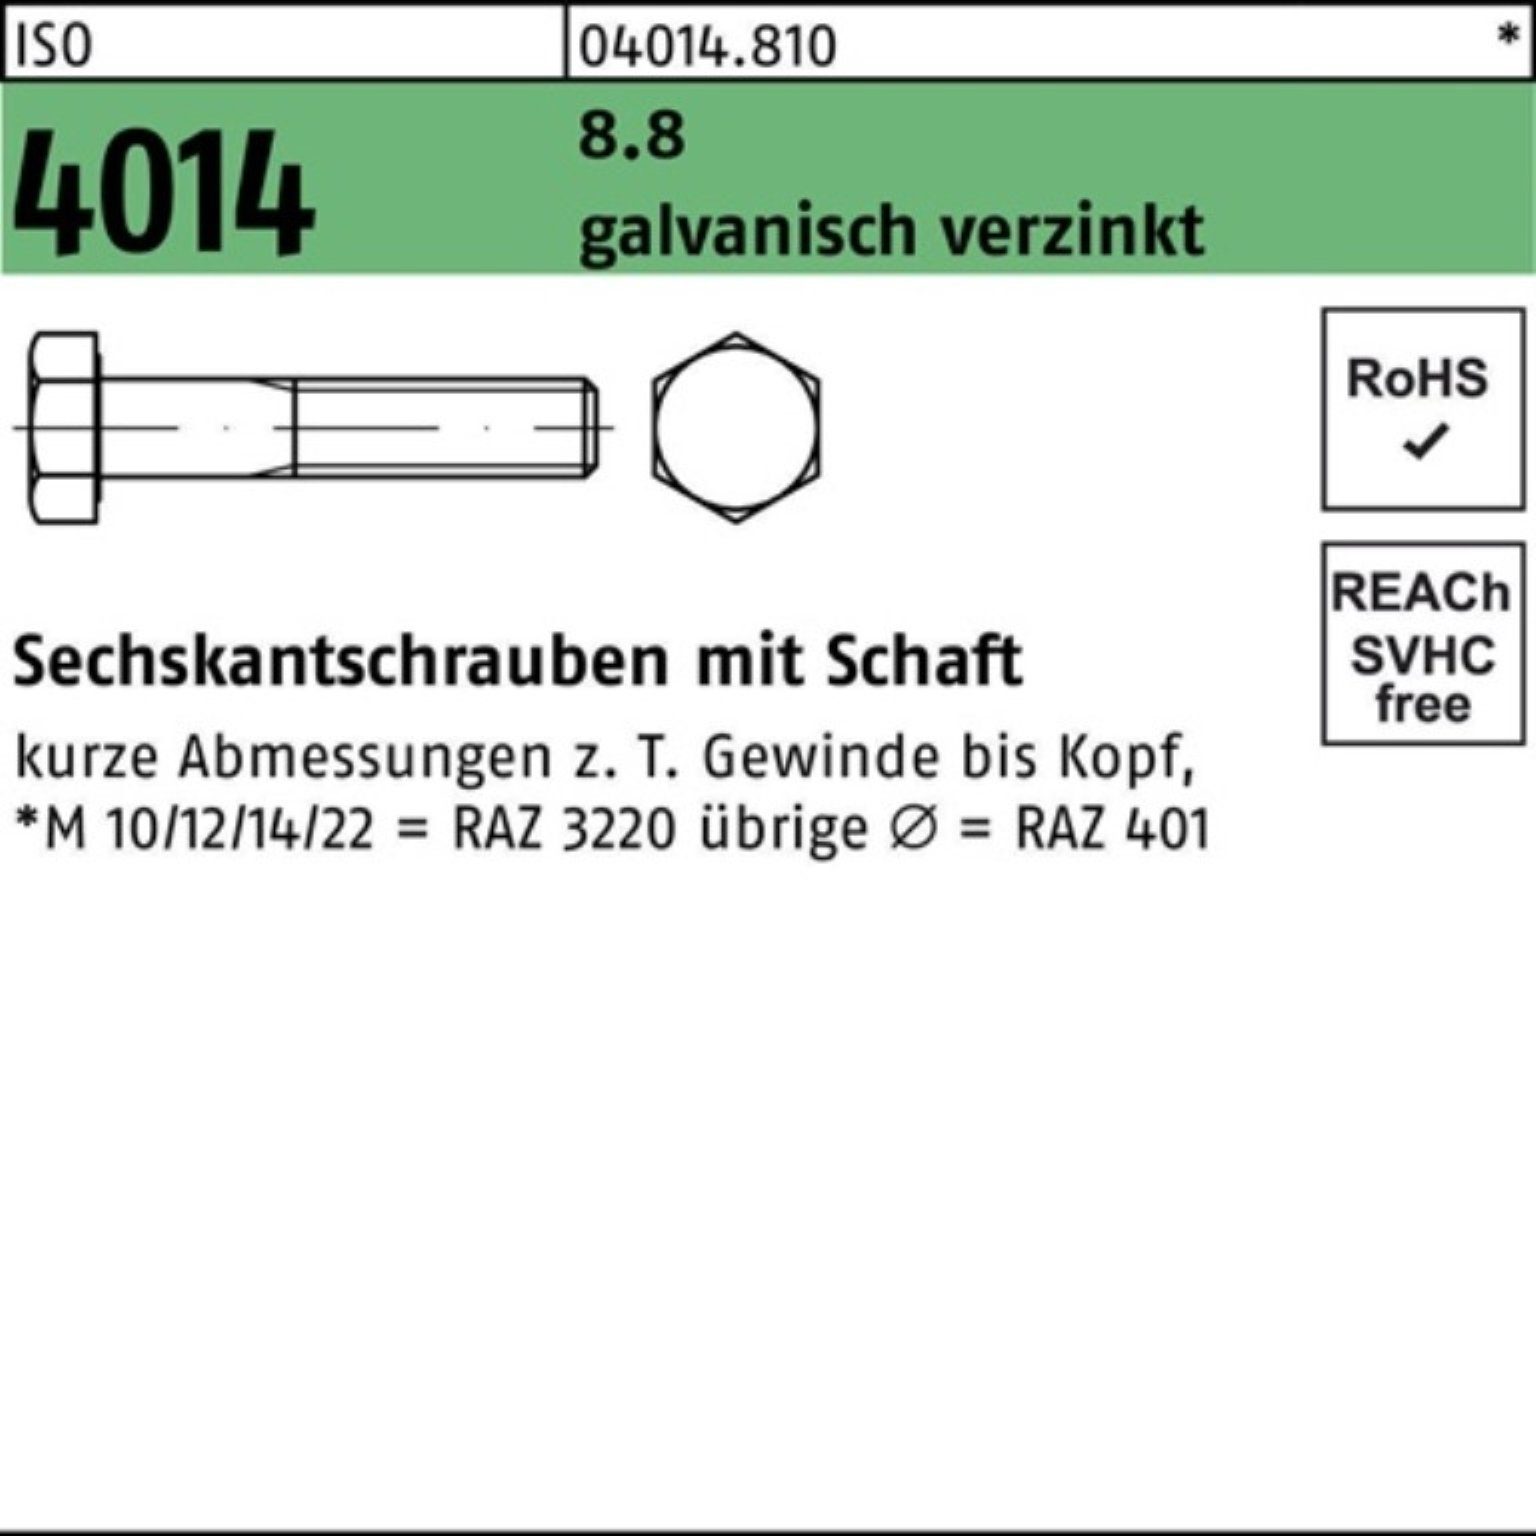 Bufab Sechskantschraube 100er Pack 1 4014 Schaft Sechskantschraube 100 M27x galv.verz. ISO 8.8